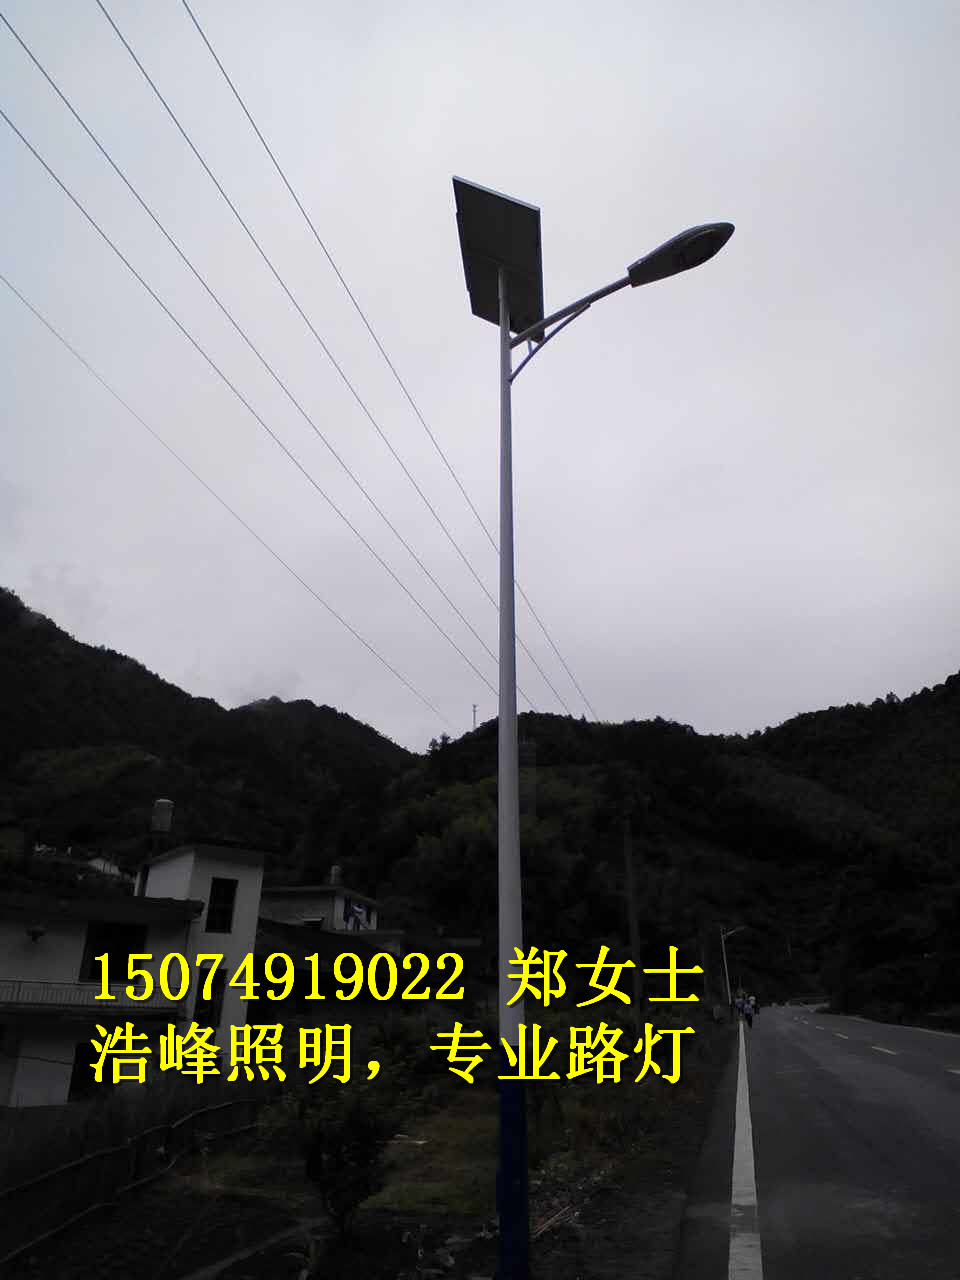 贵州安顺/镇宁锂电池太阳能路灯厂家 锂电池路灯批发